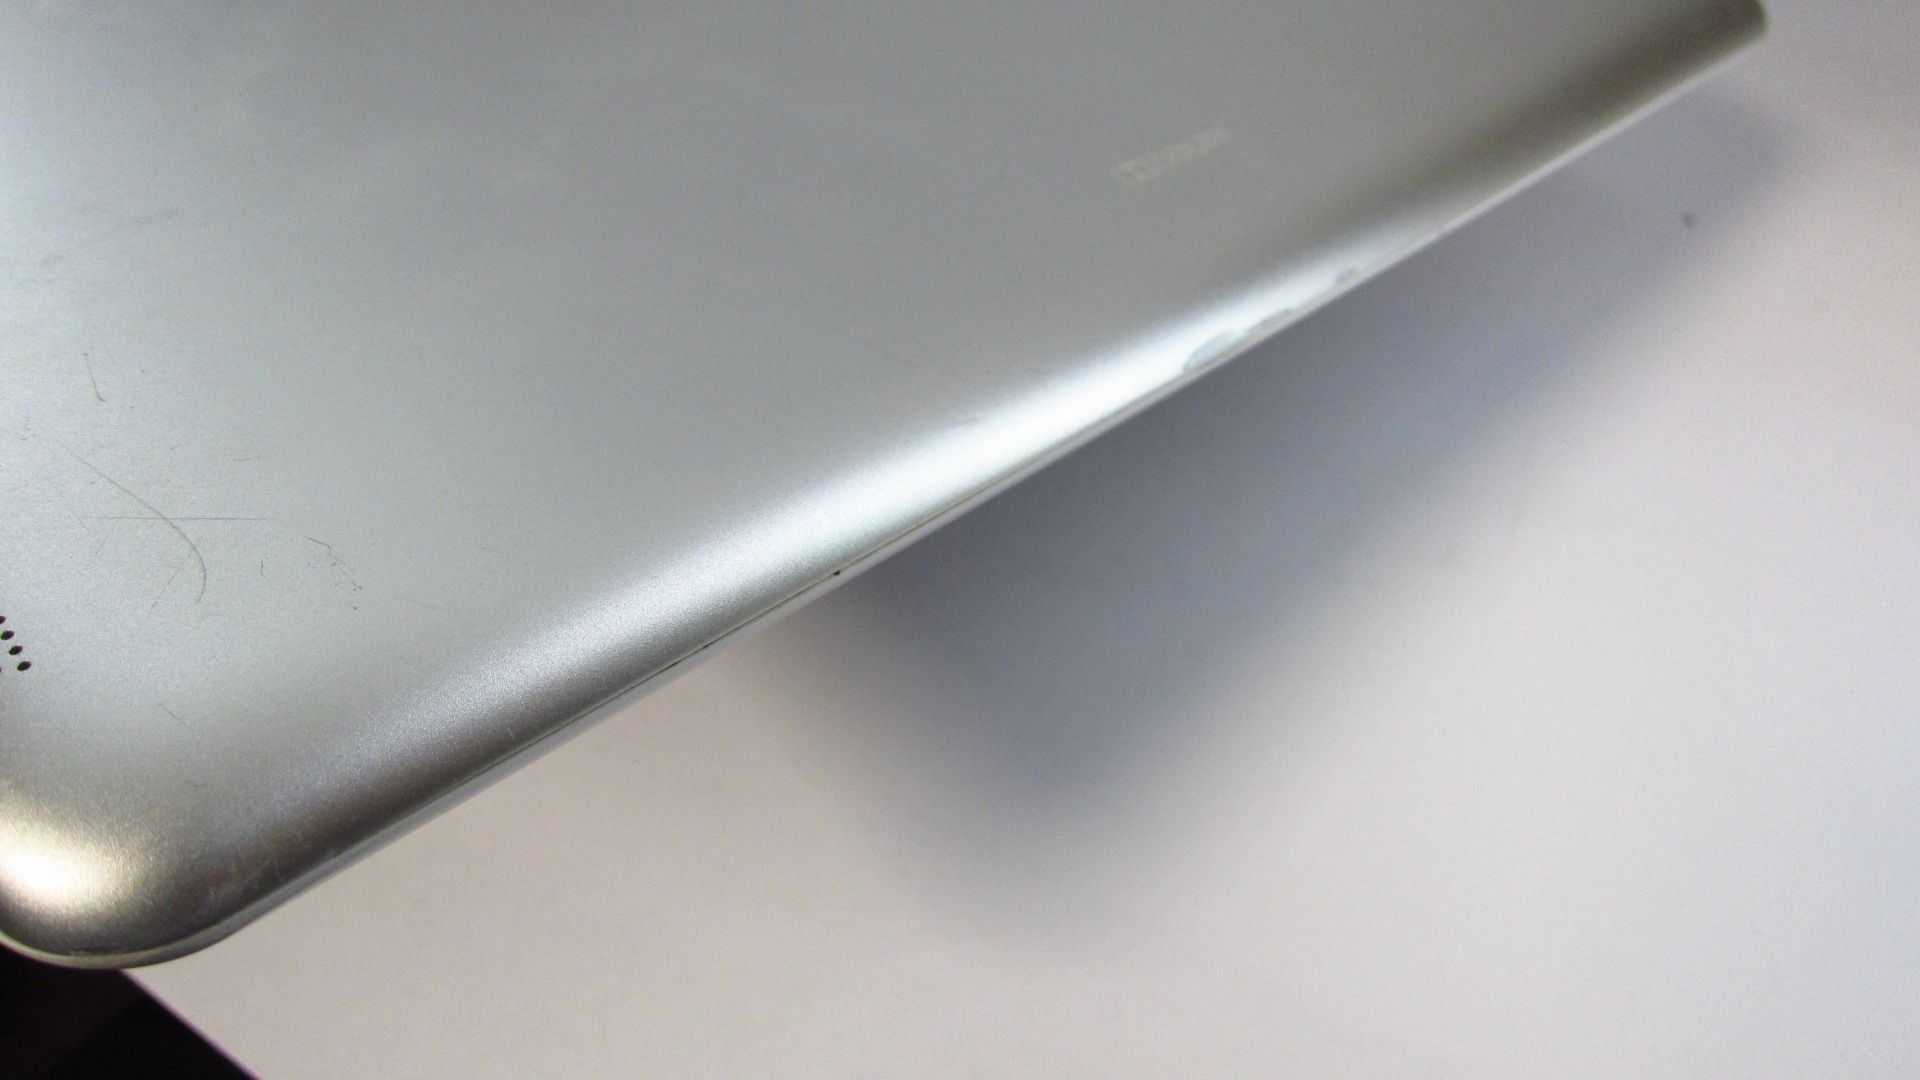 Планшет Acer Iconia Tab 10 A3-A20 16GB White